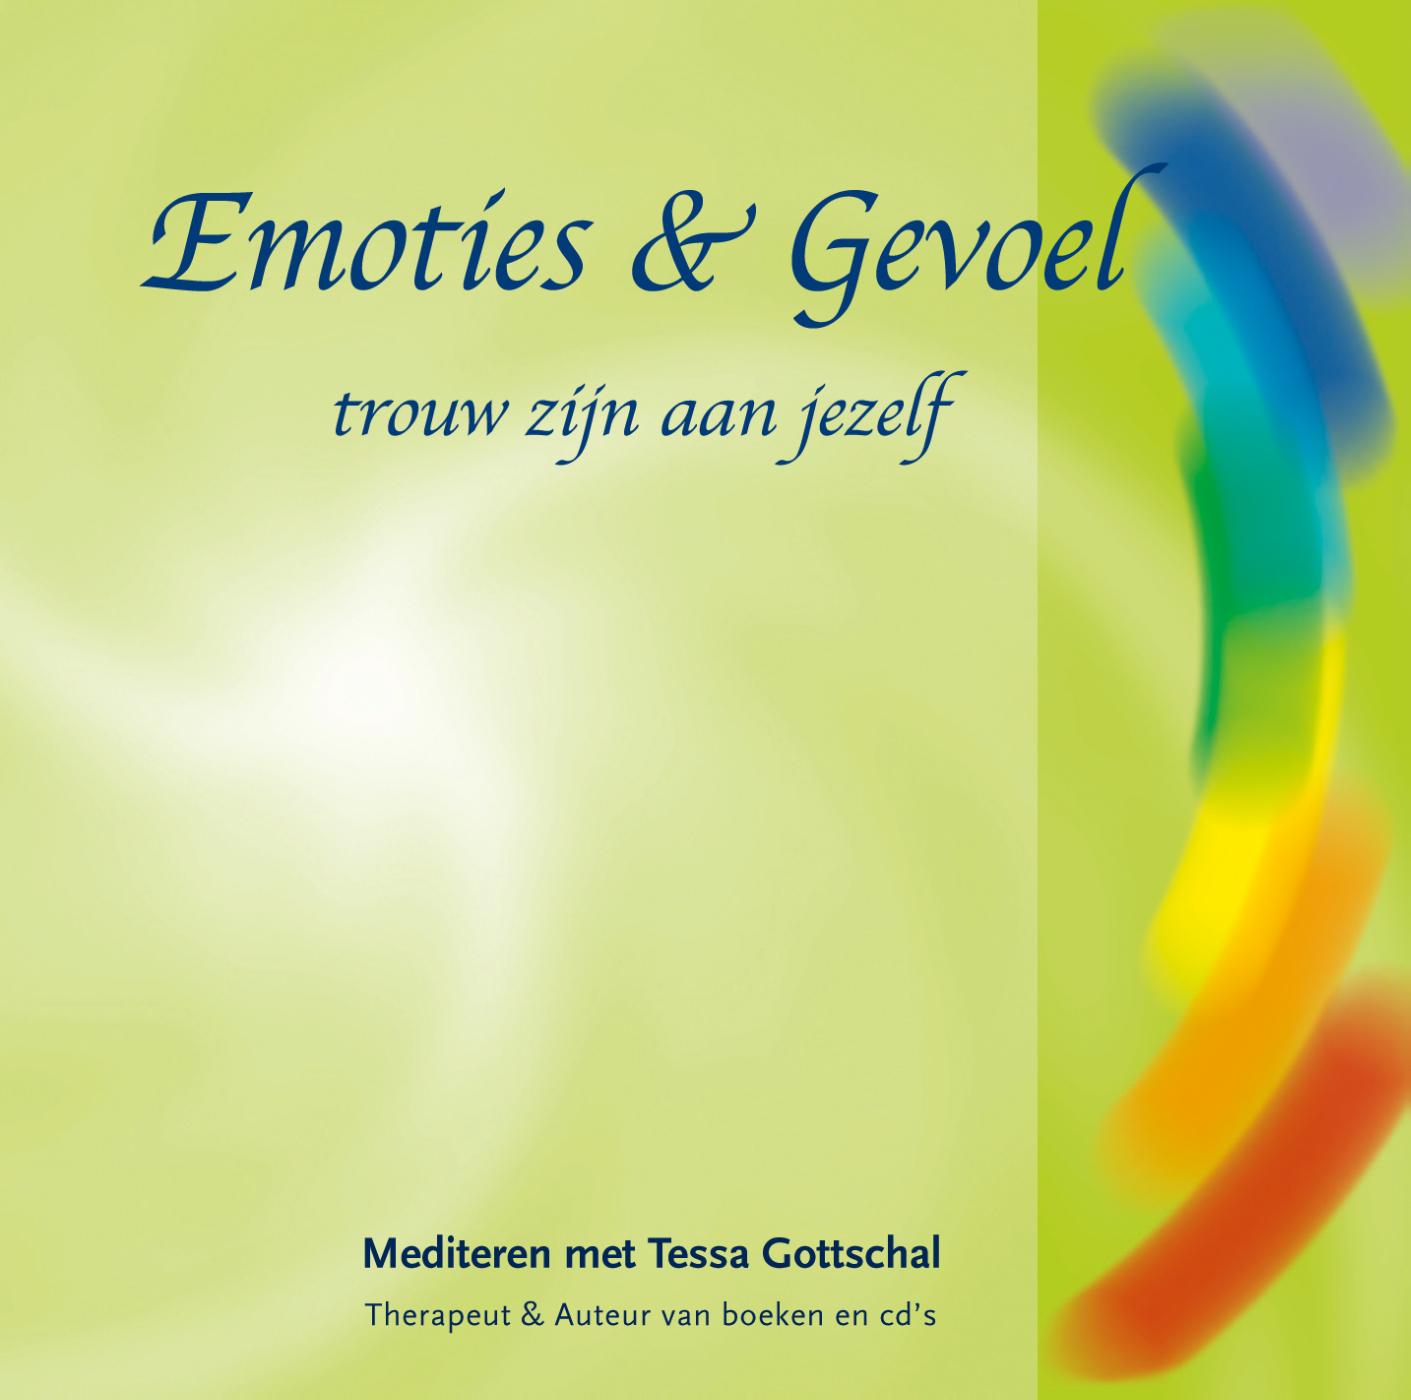 Emoties & Gevoel (Ebook)